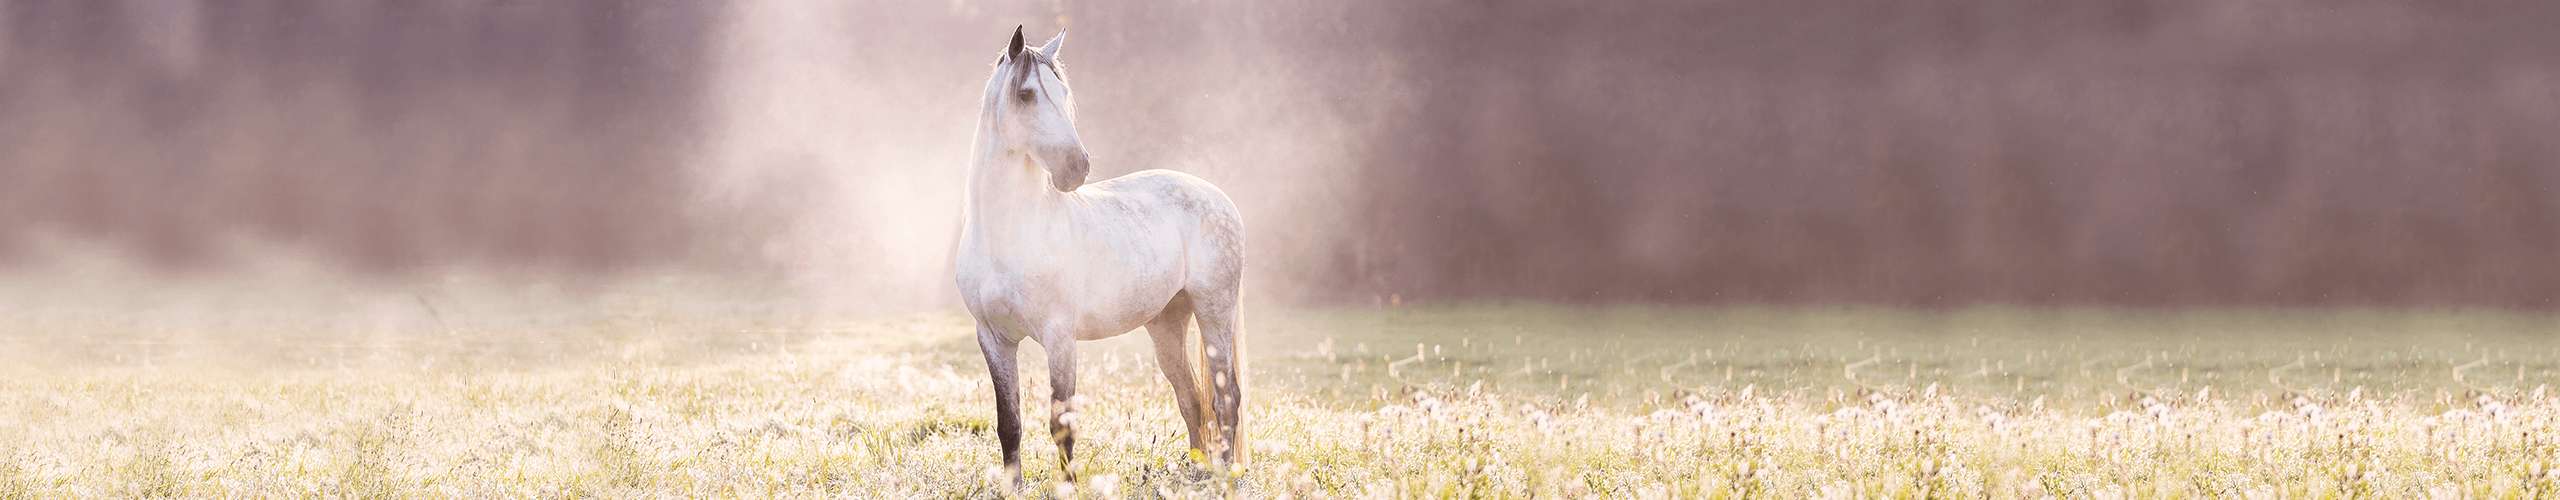 Die häufigste Hormonstörung bei Pferden